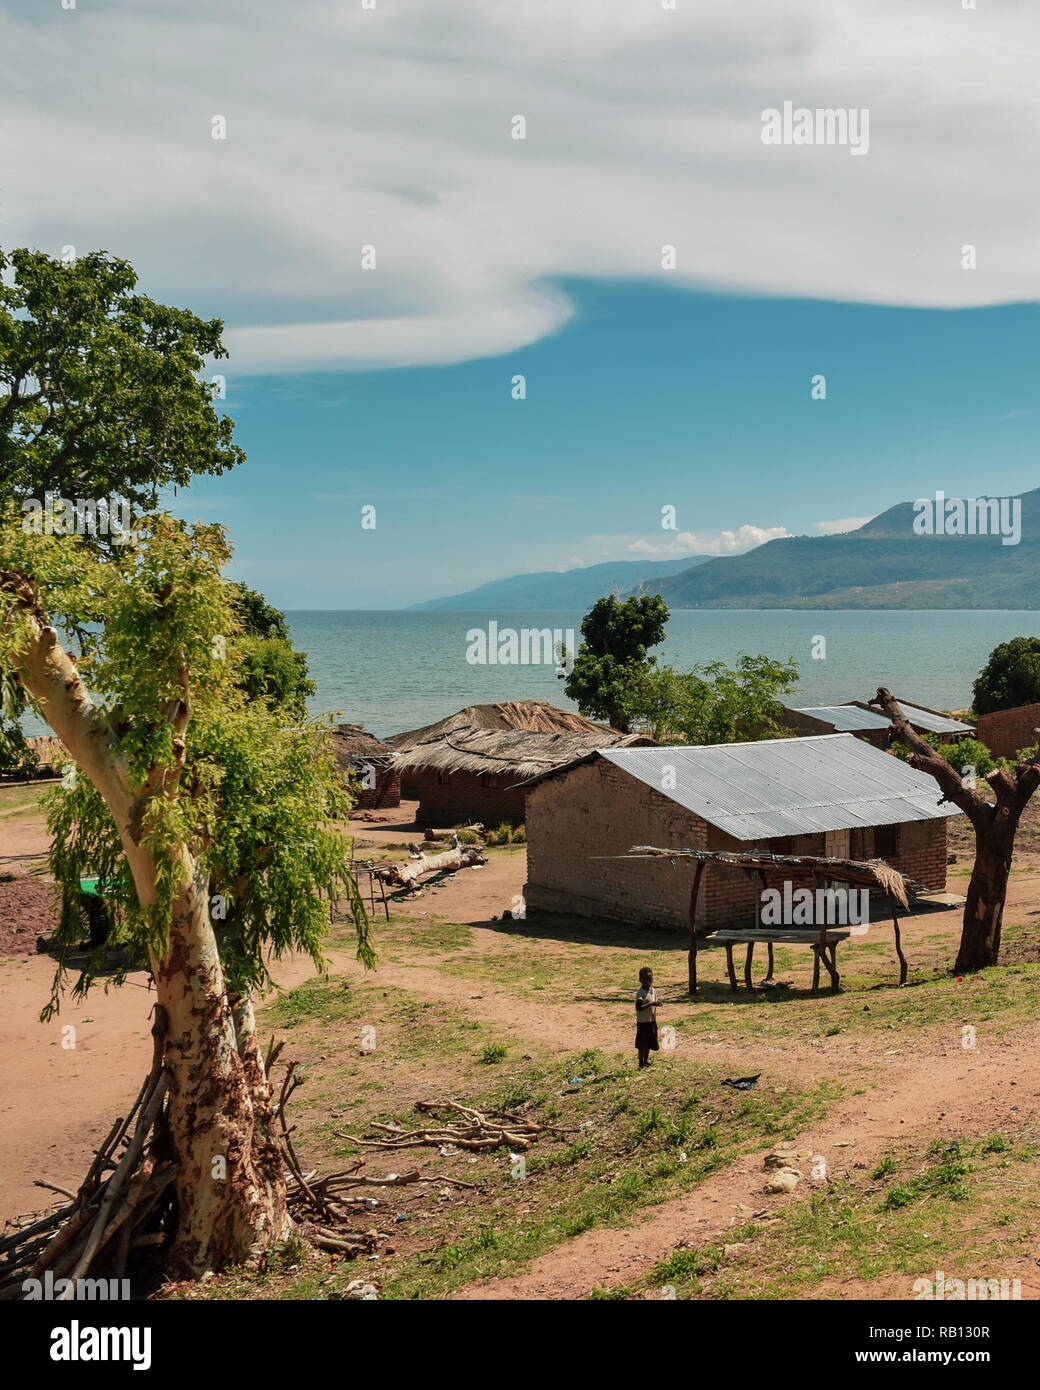 Lake Malawi seen from Chitimba, Malawi Stock Photo